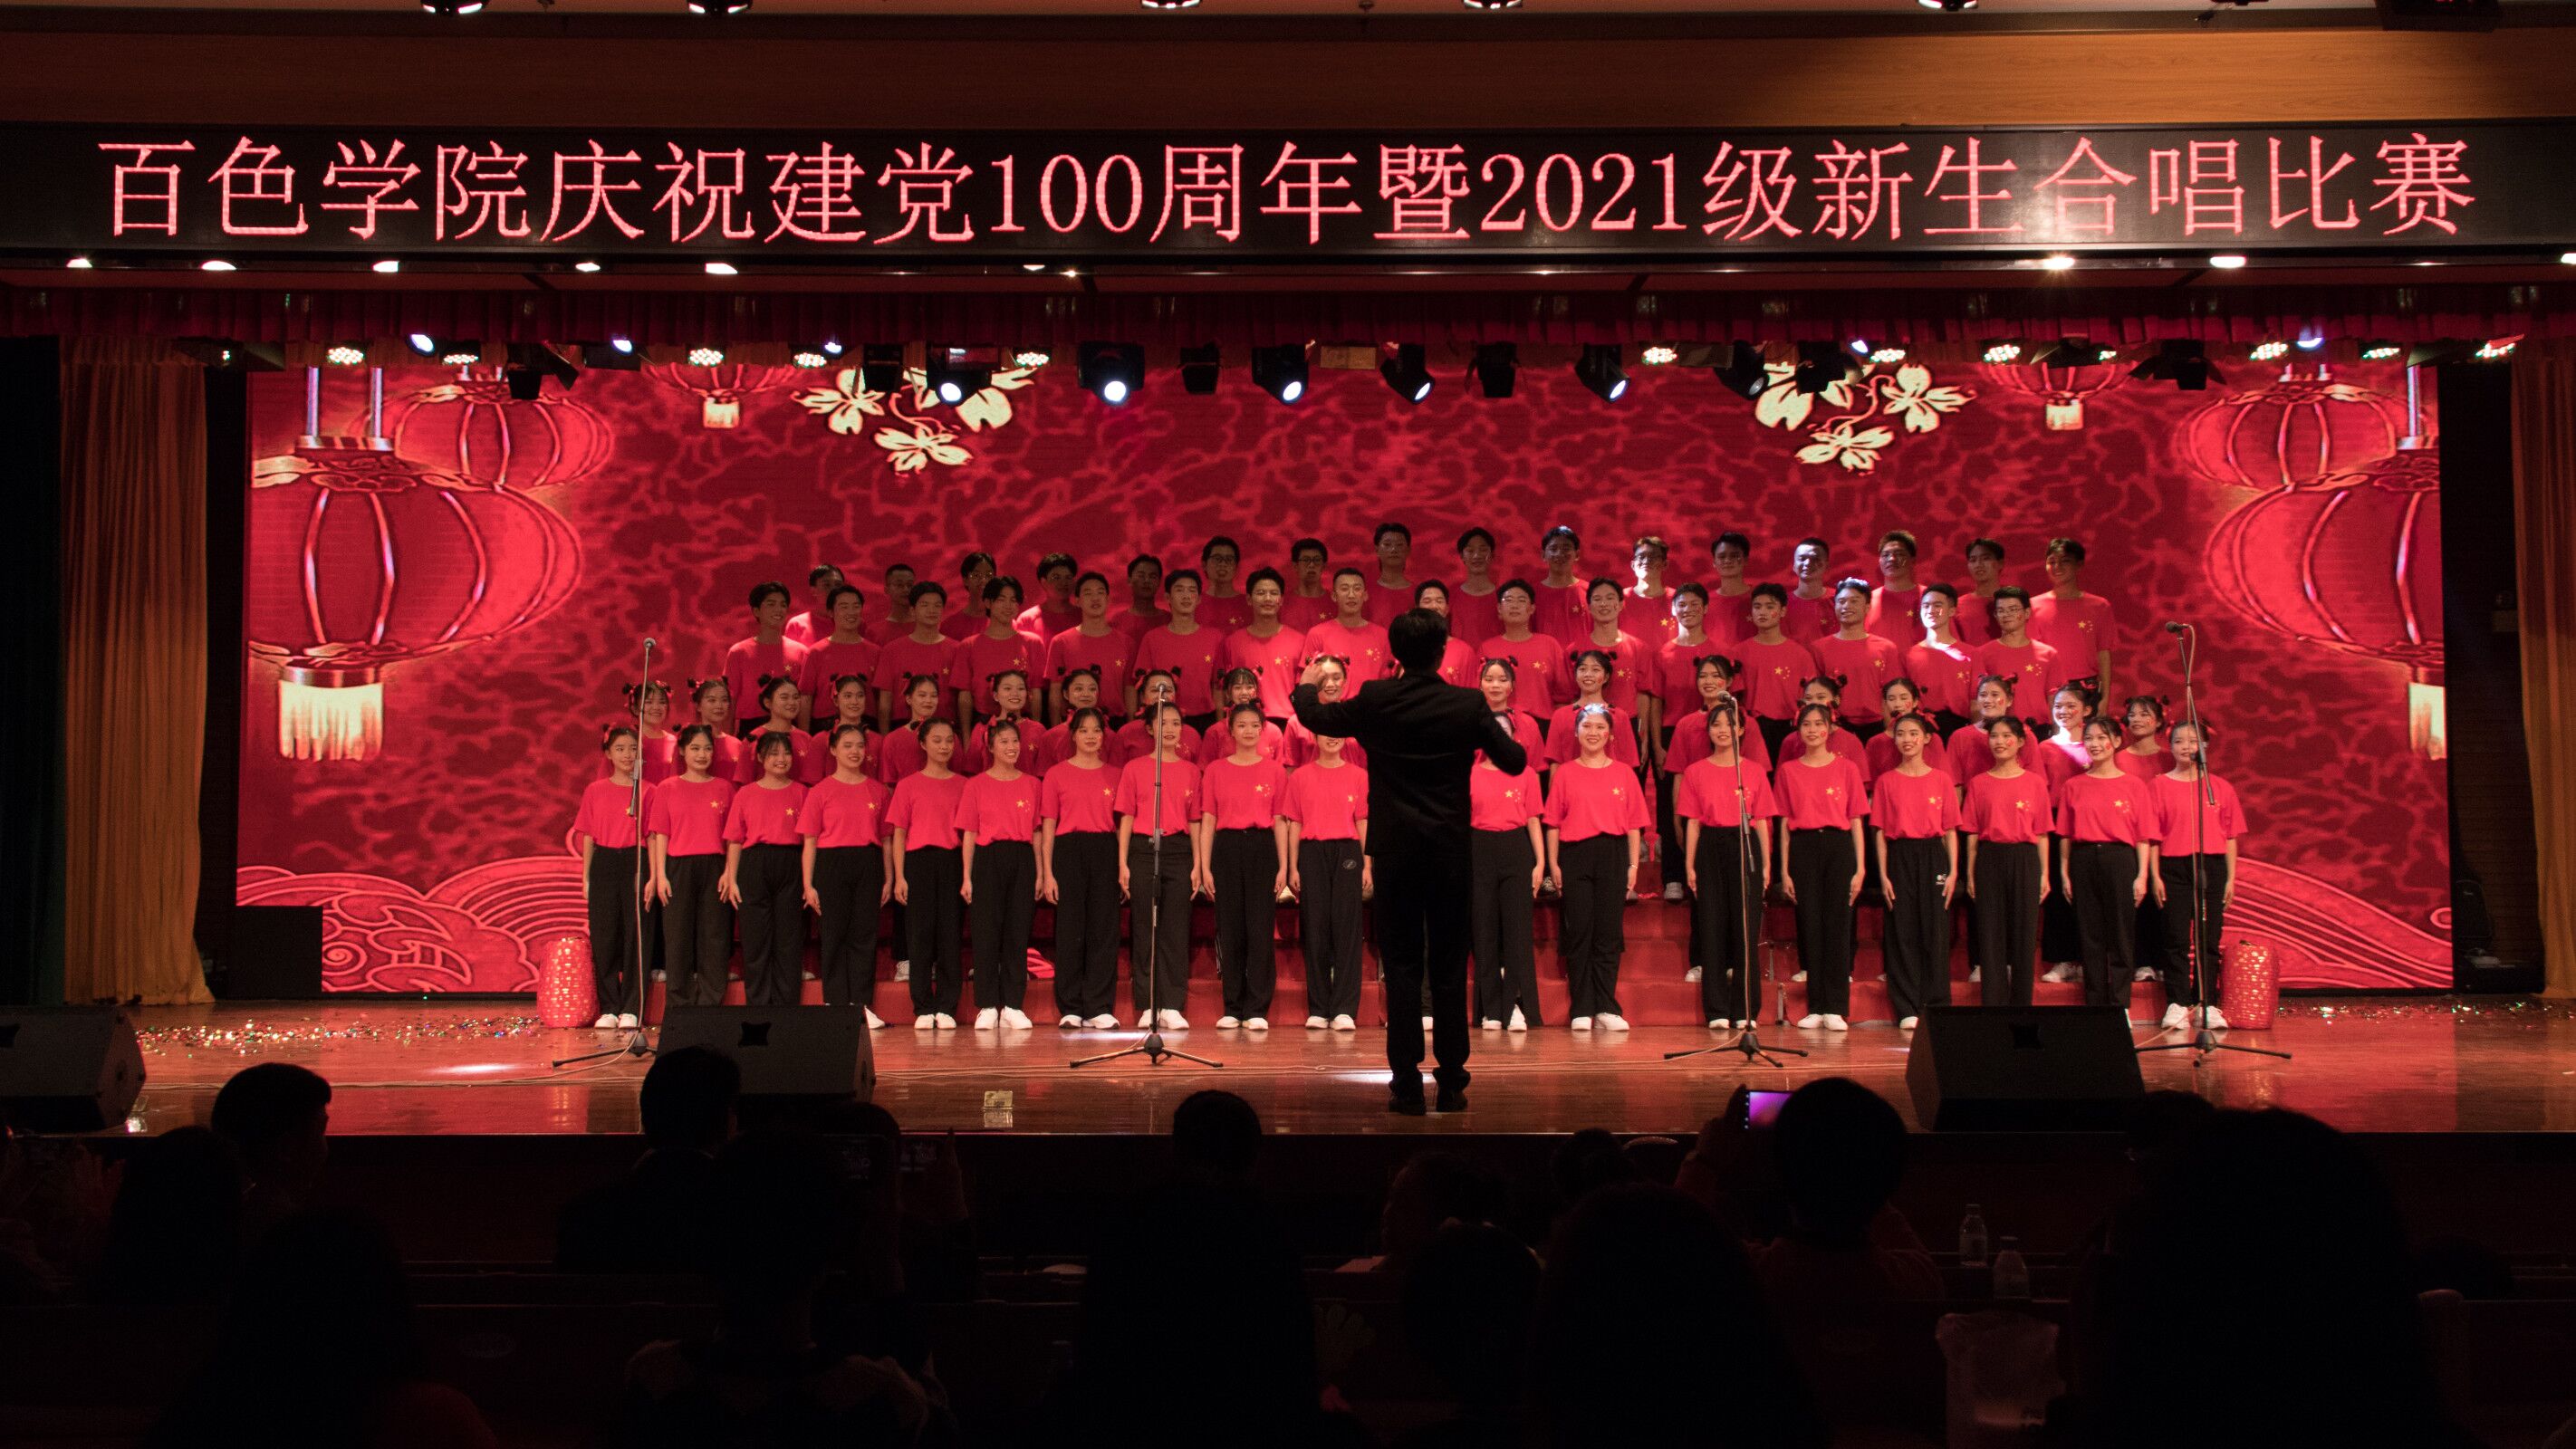 【高清图】2018年北京霞云岭乡堂上村-红歌唱响的地方-中关村在线摄影论坛